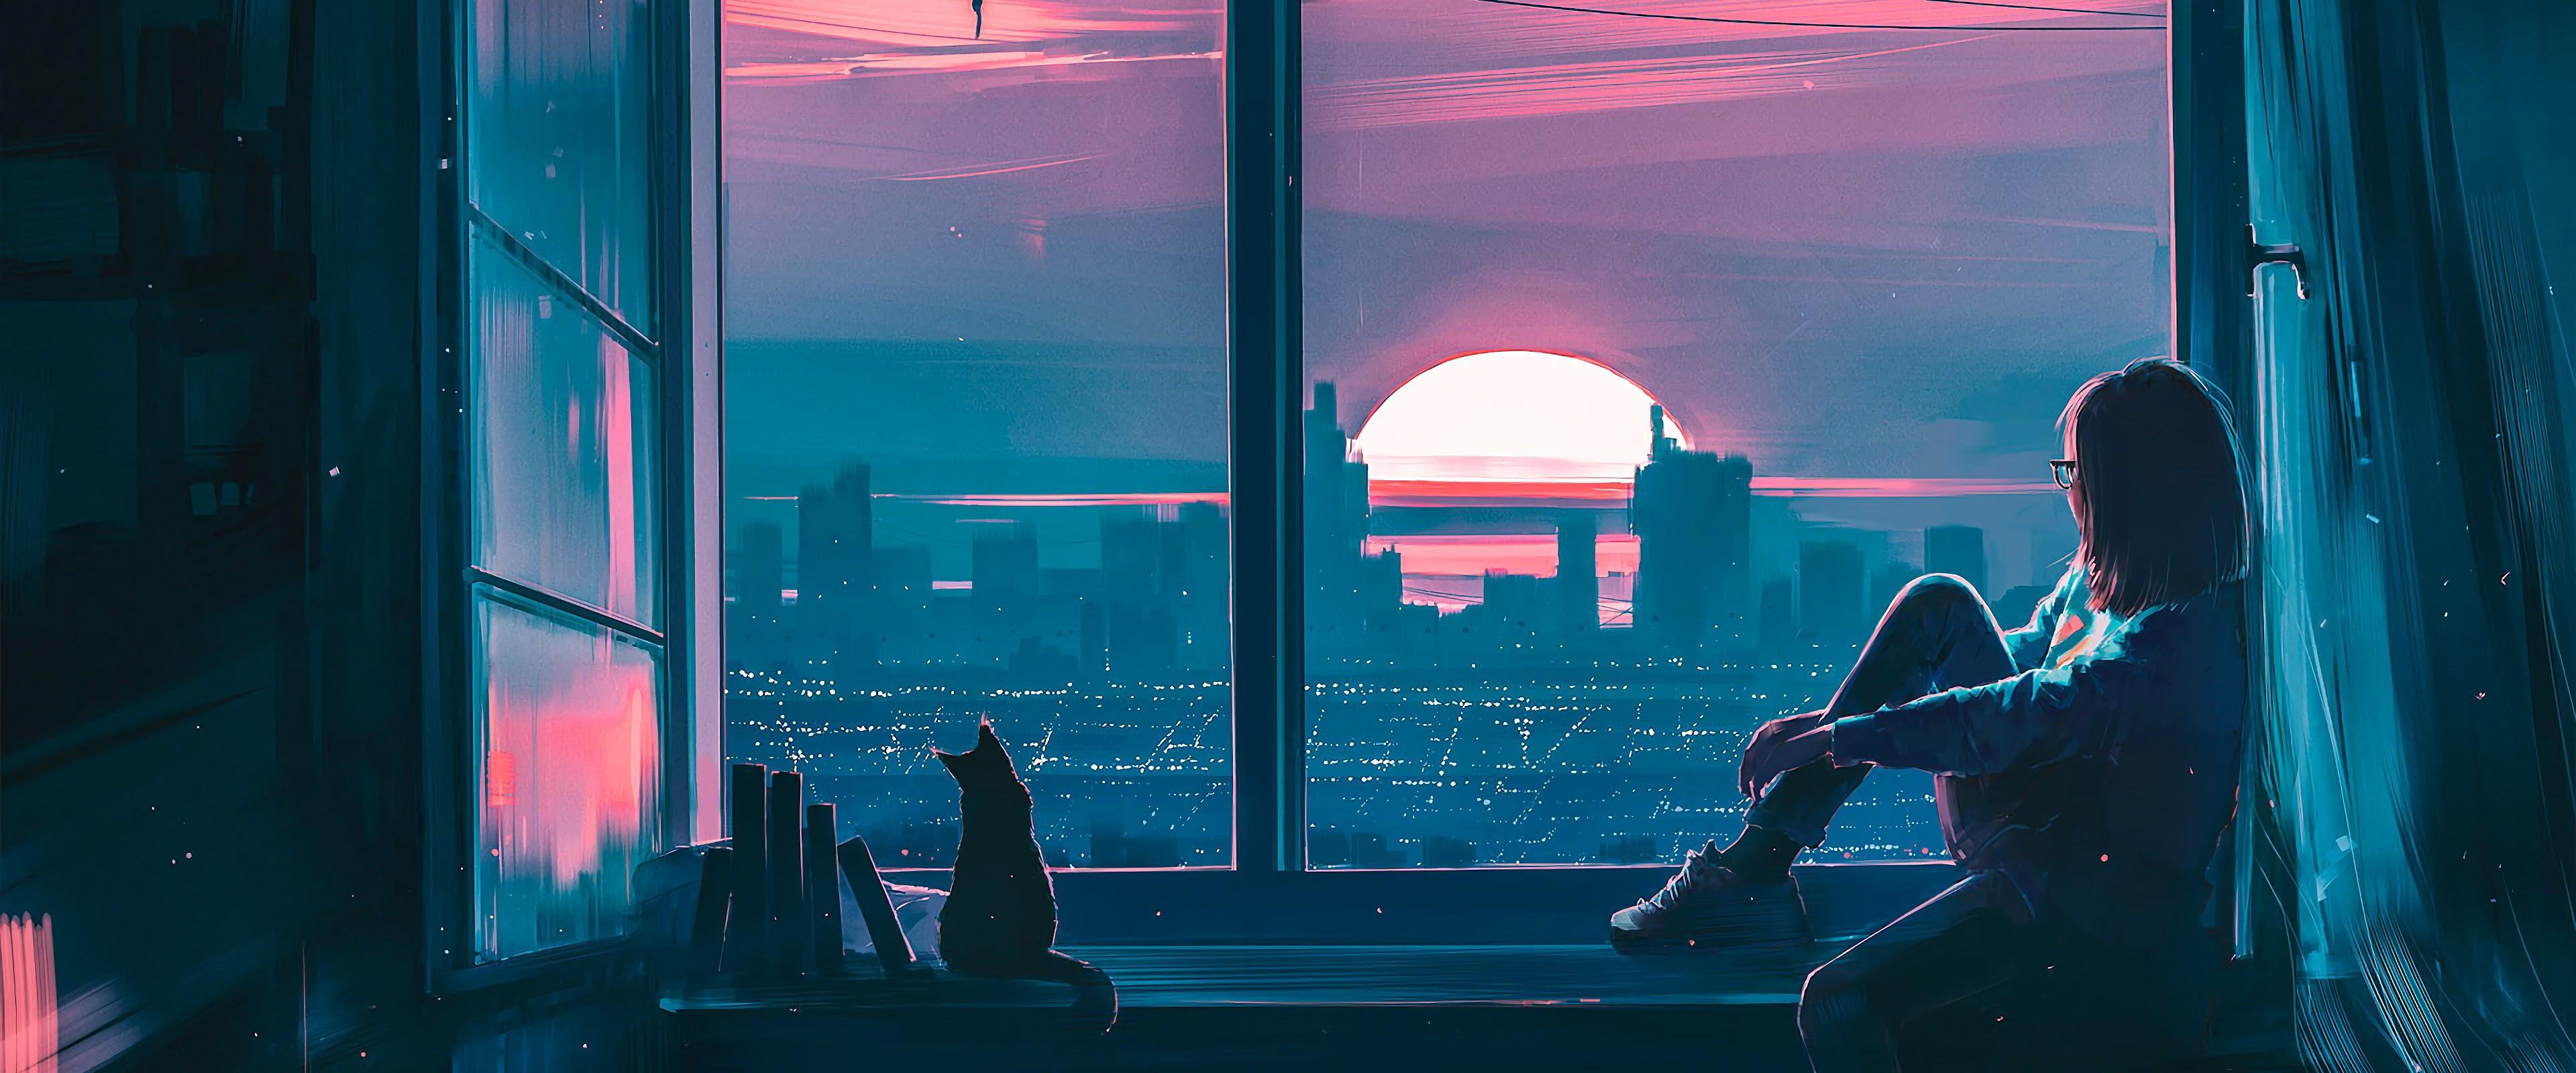 Anime Girl Cat City Scenery 4k Wallpaper